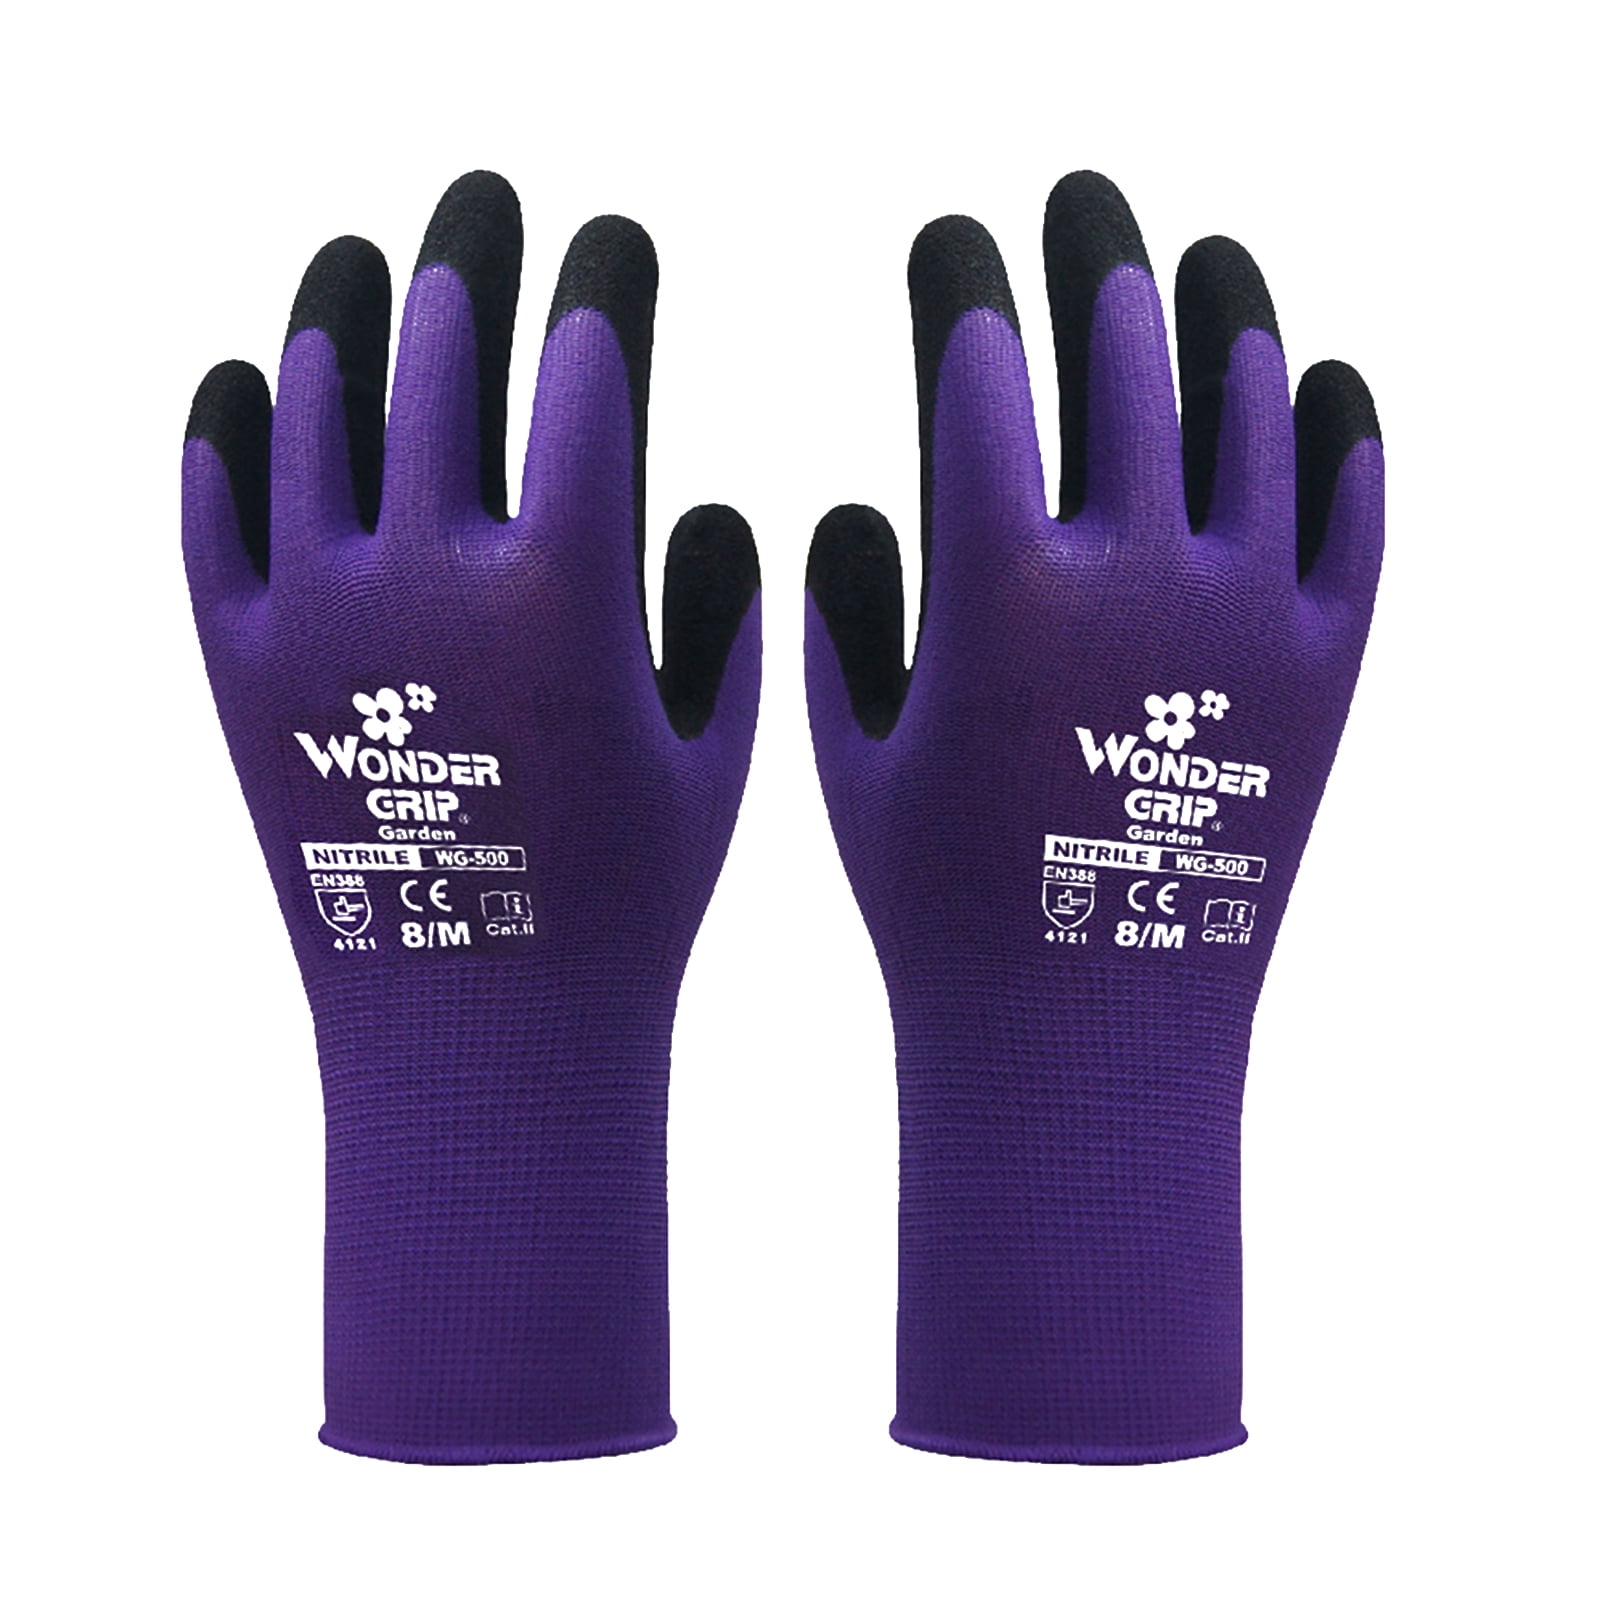 1 Latex Grip Warm Work wear Topaz Ice Gloves Size 10 Handling 